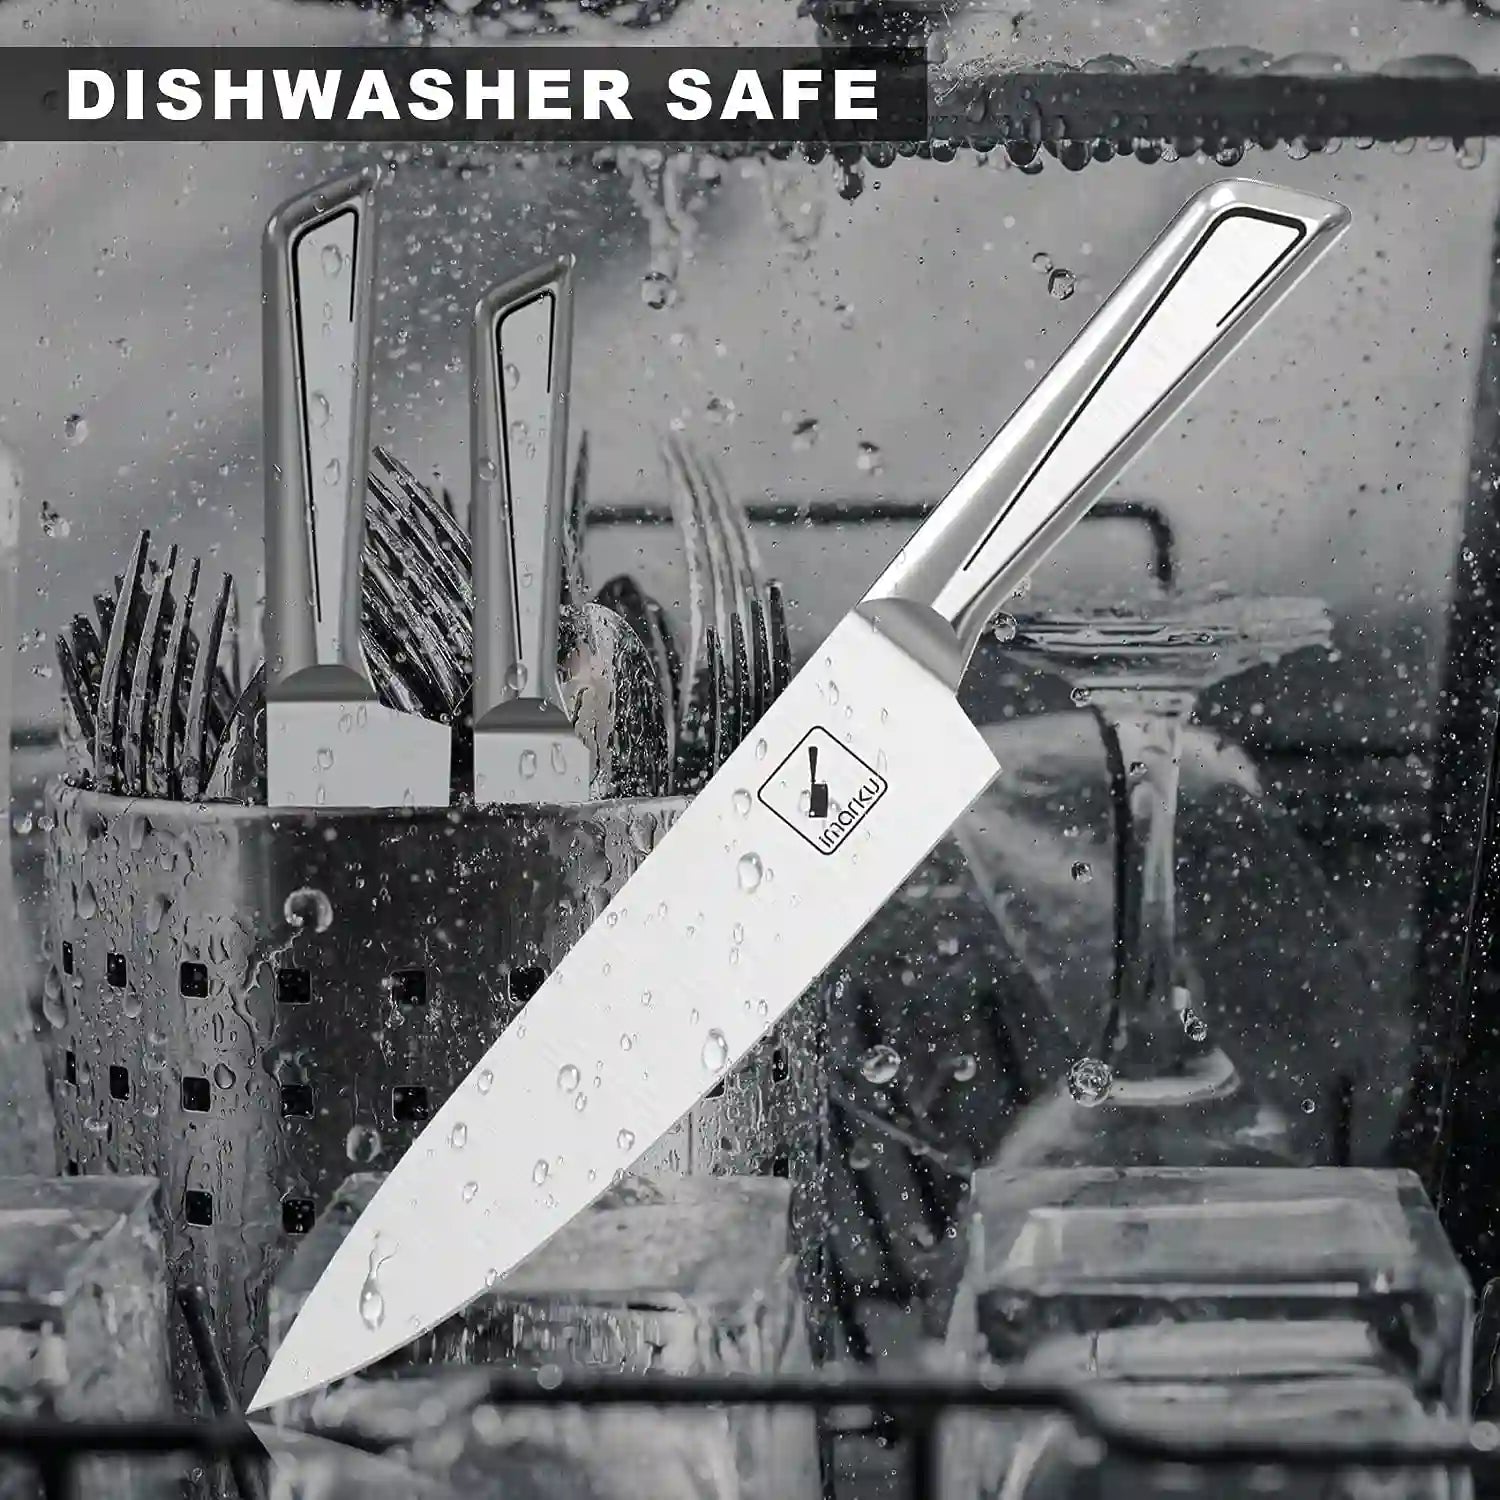 ブロック付きナイフ14点セット |食器洗い機対応 |イマーク